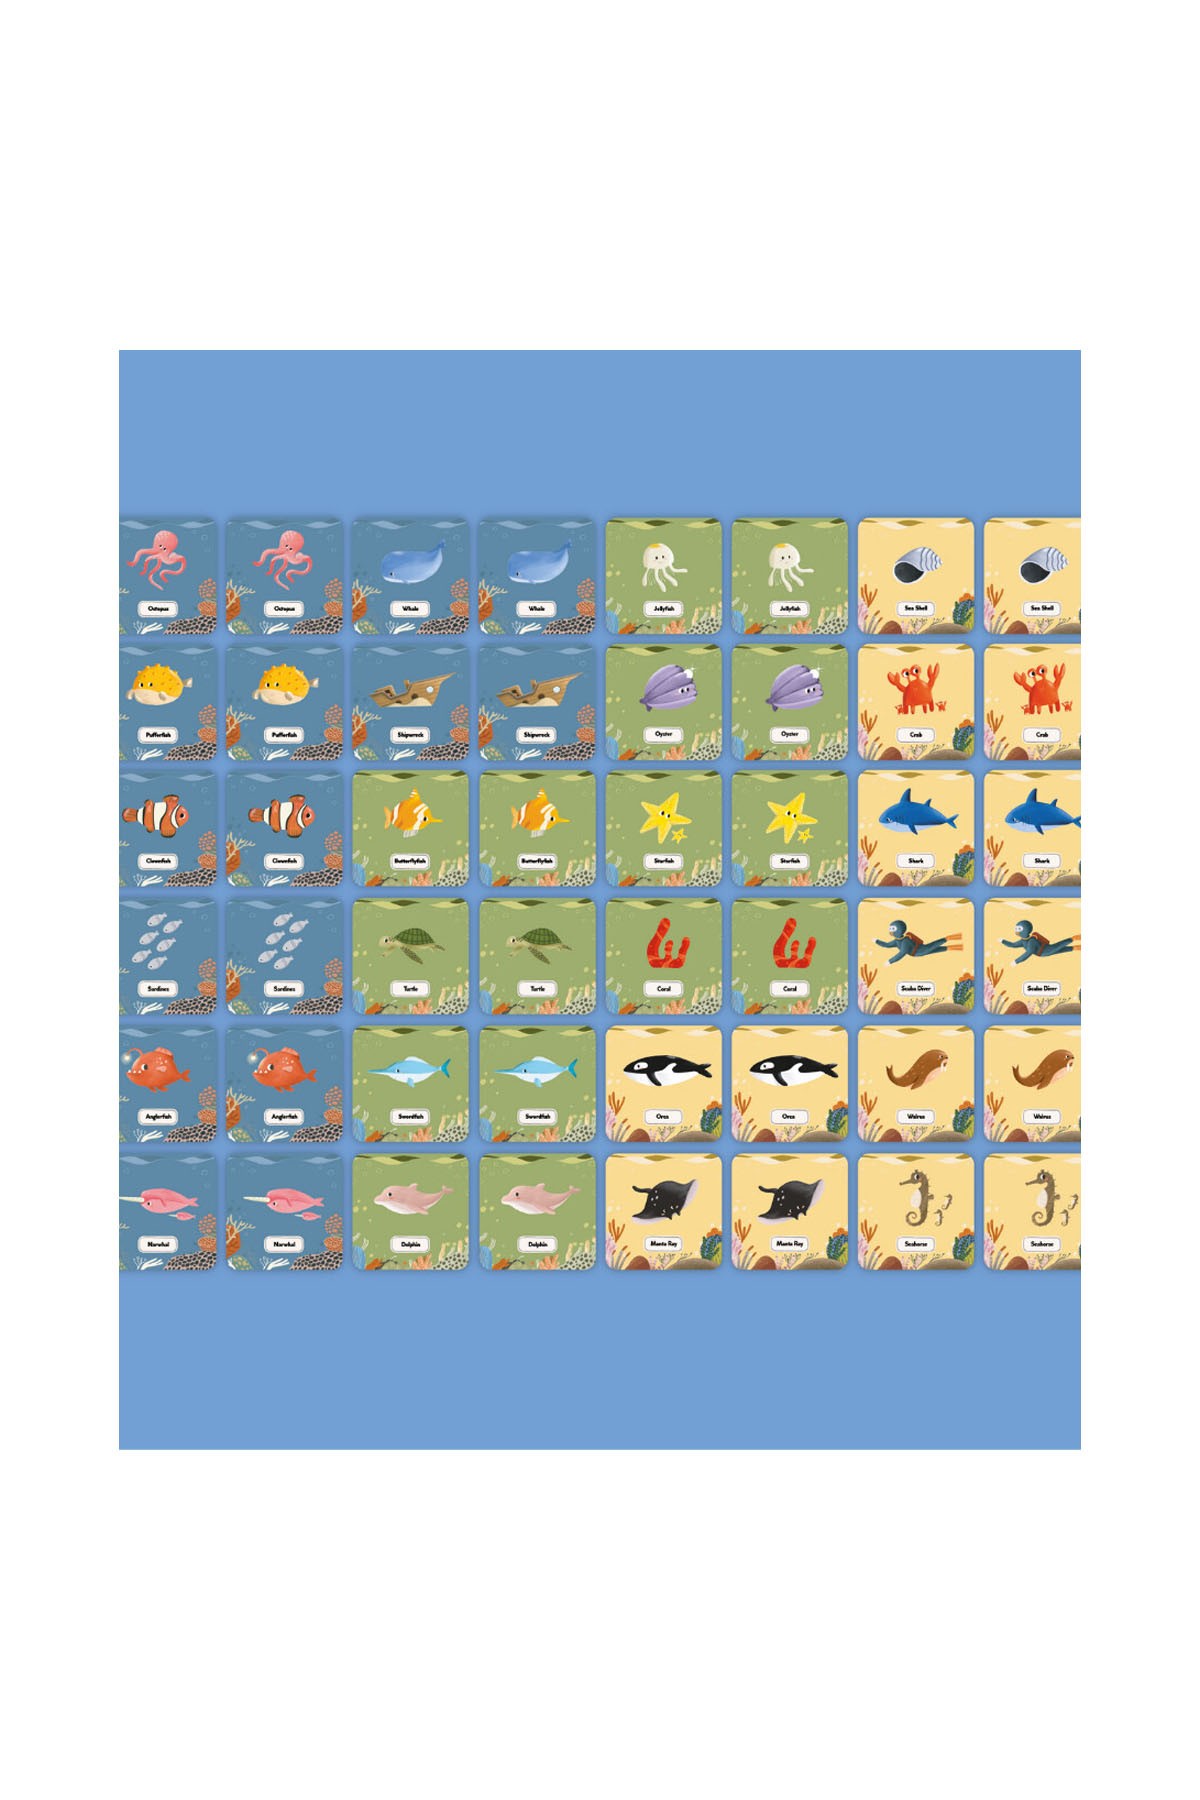 Moritoys Memory Card Game 48 Kartlı Hafıza ve Eşleştirme Oyunu